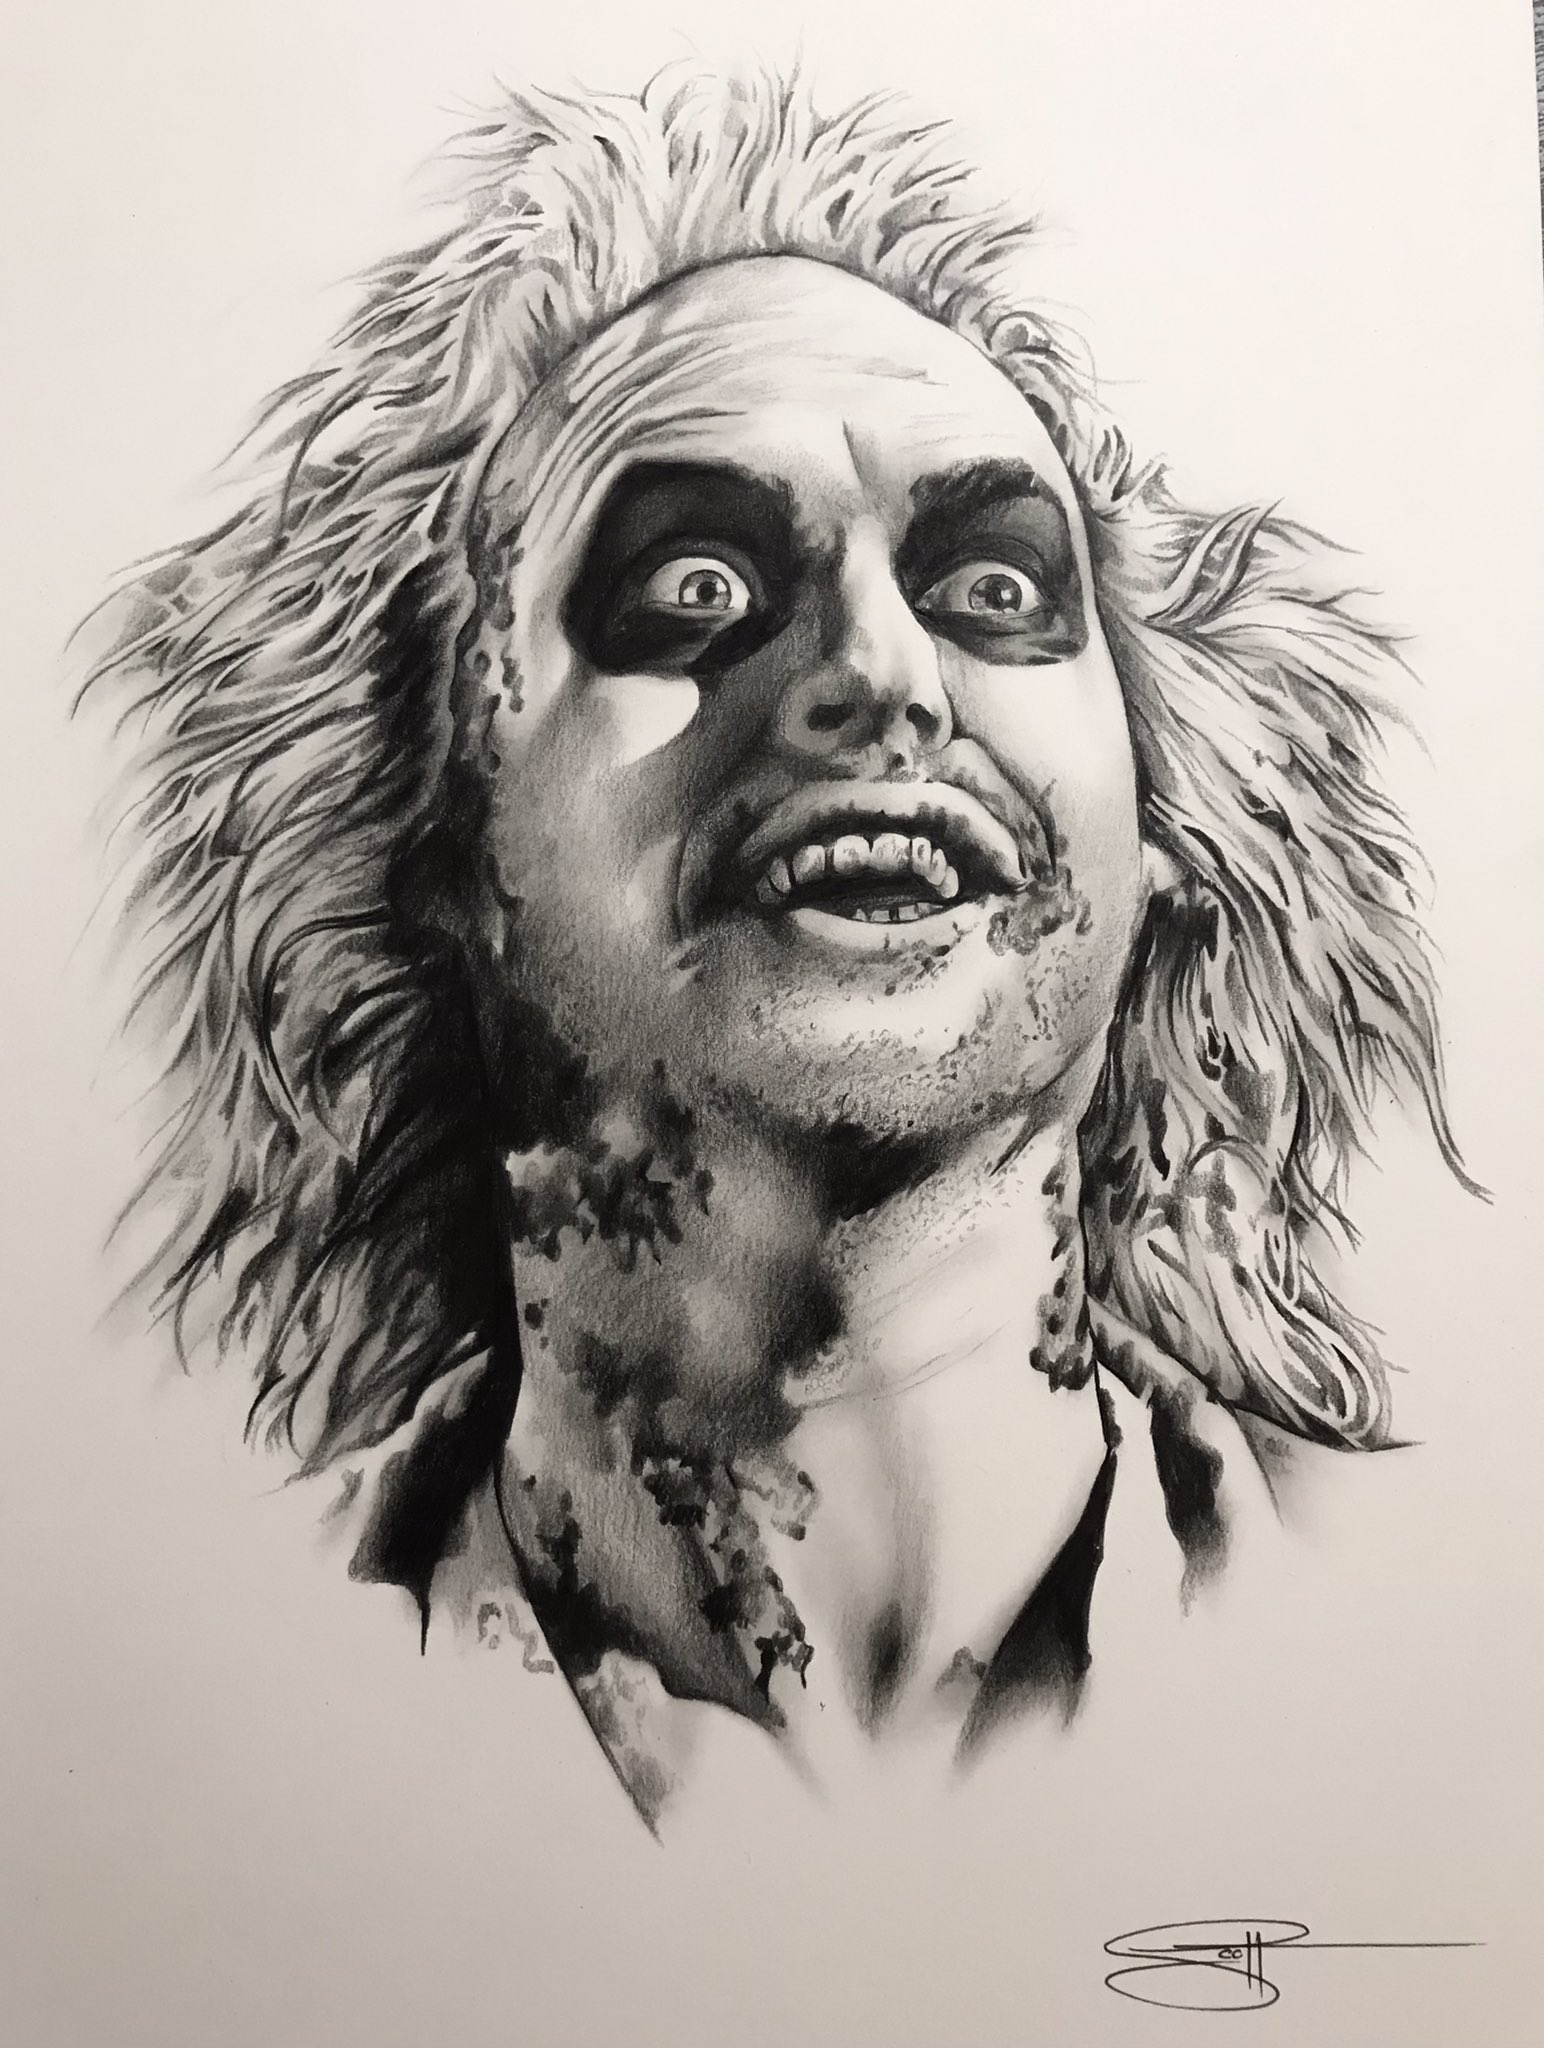 Tony Todd Candyman handdrawn horror film fan art portrait by